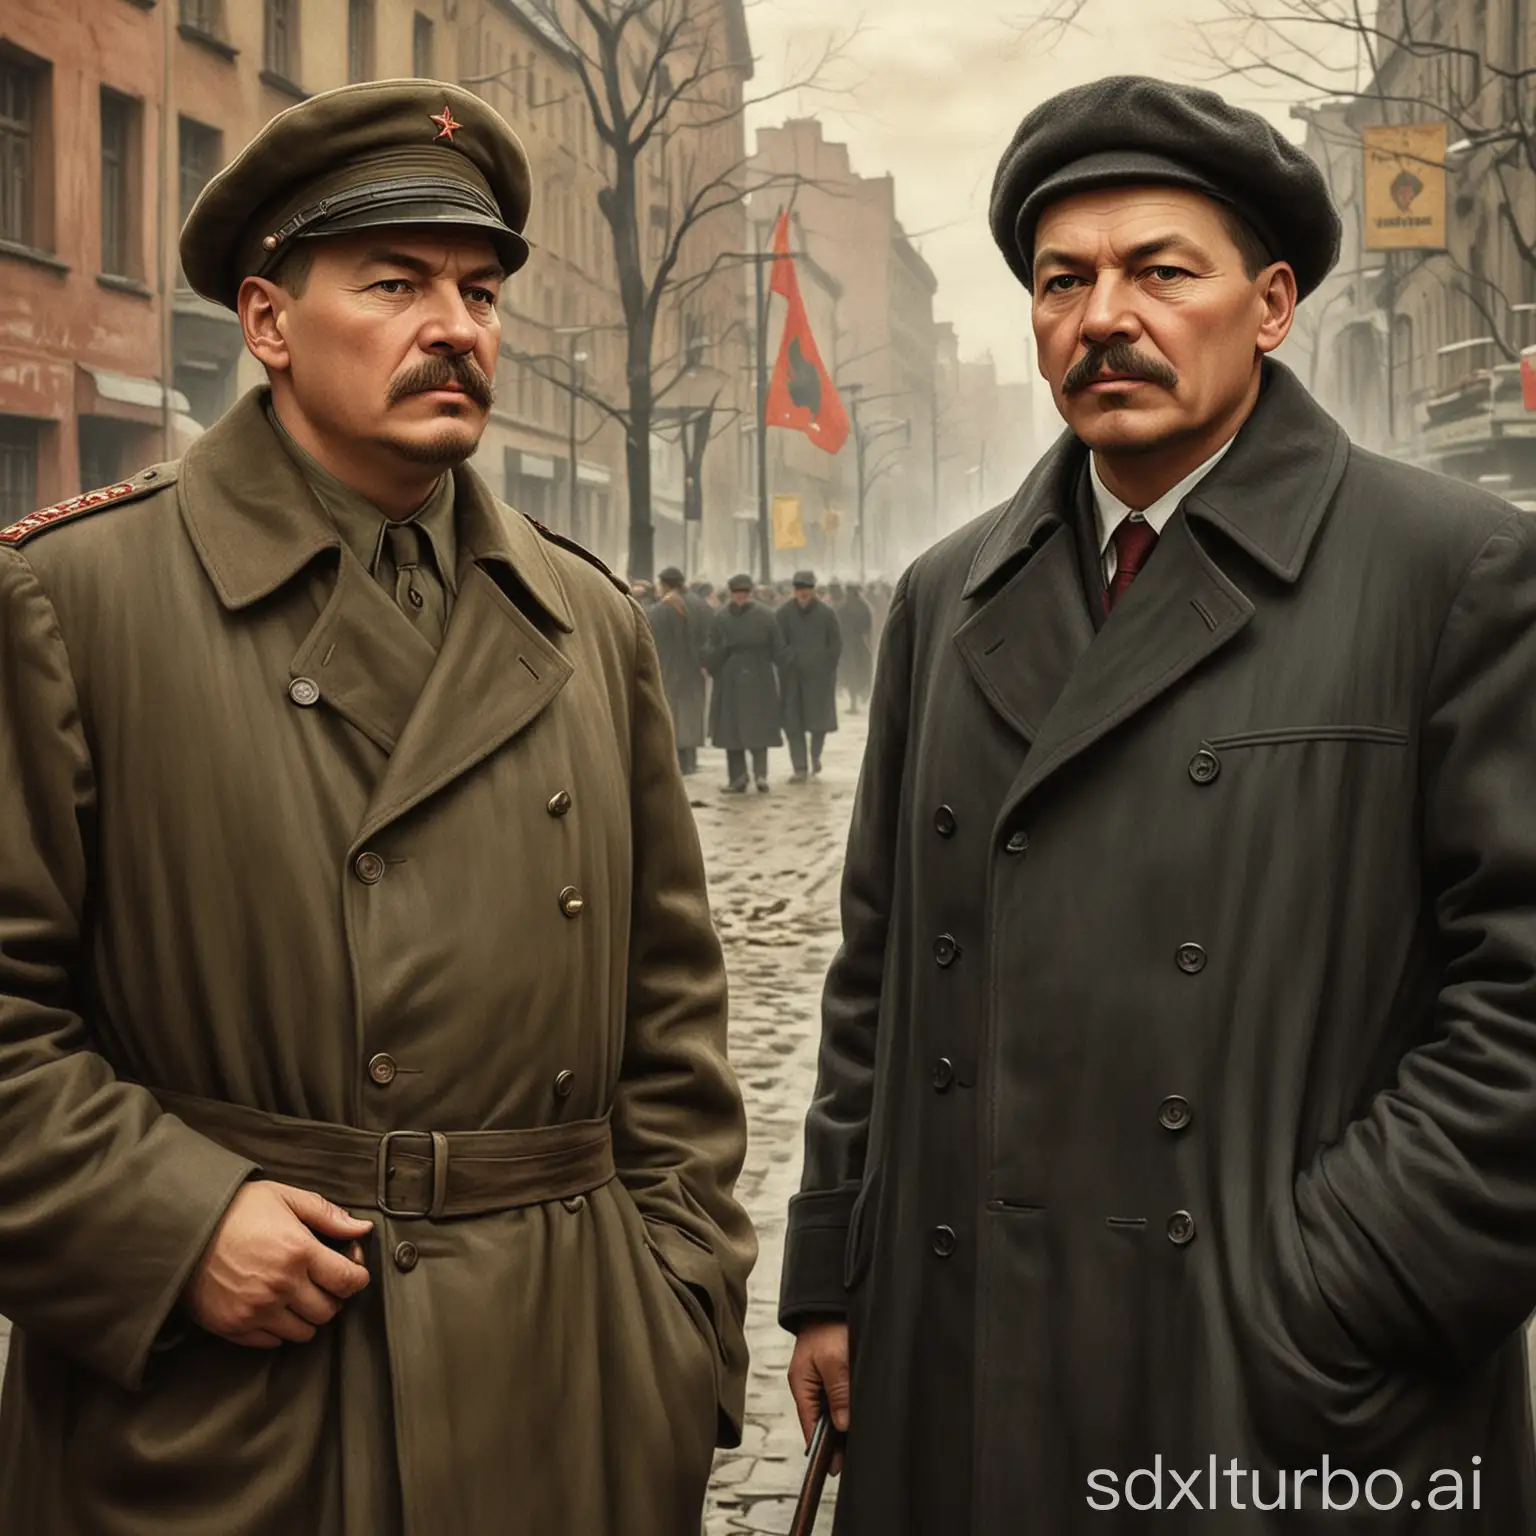 正在带领人民反抗资产阶级压迫的弗拉基米尔伊里奇列宁和斯大林朱加什维利